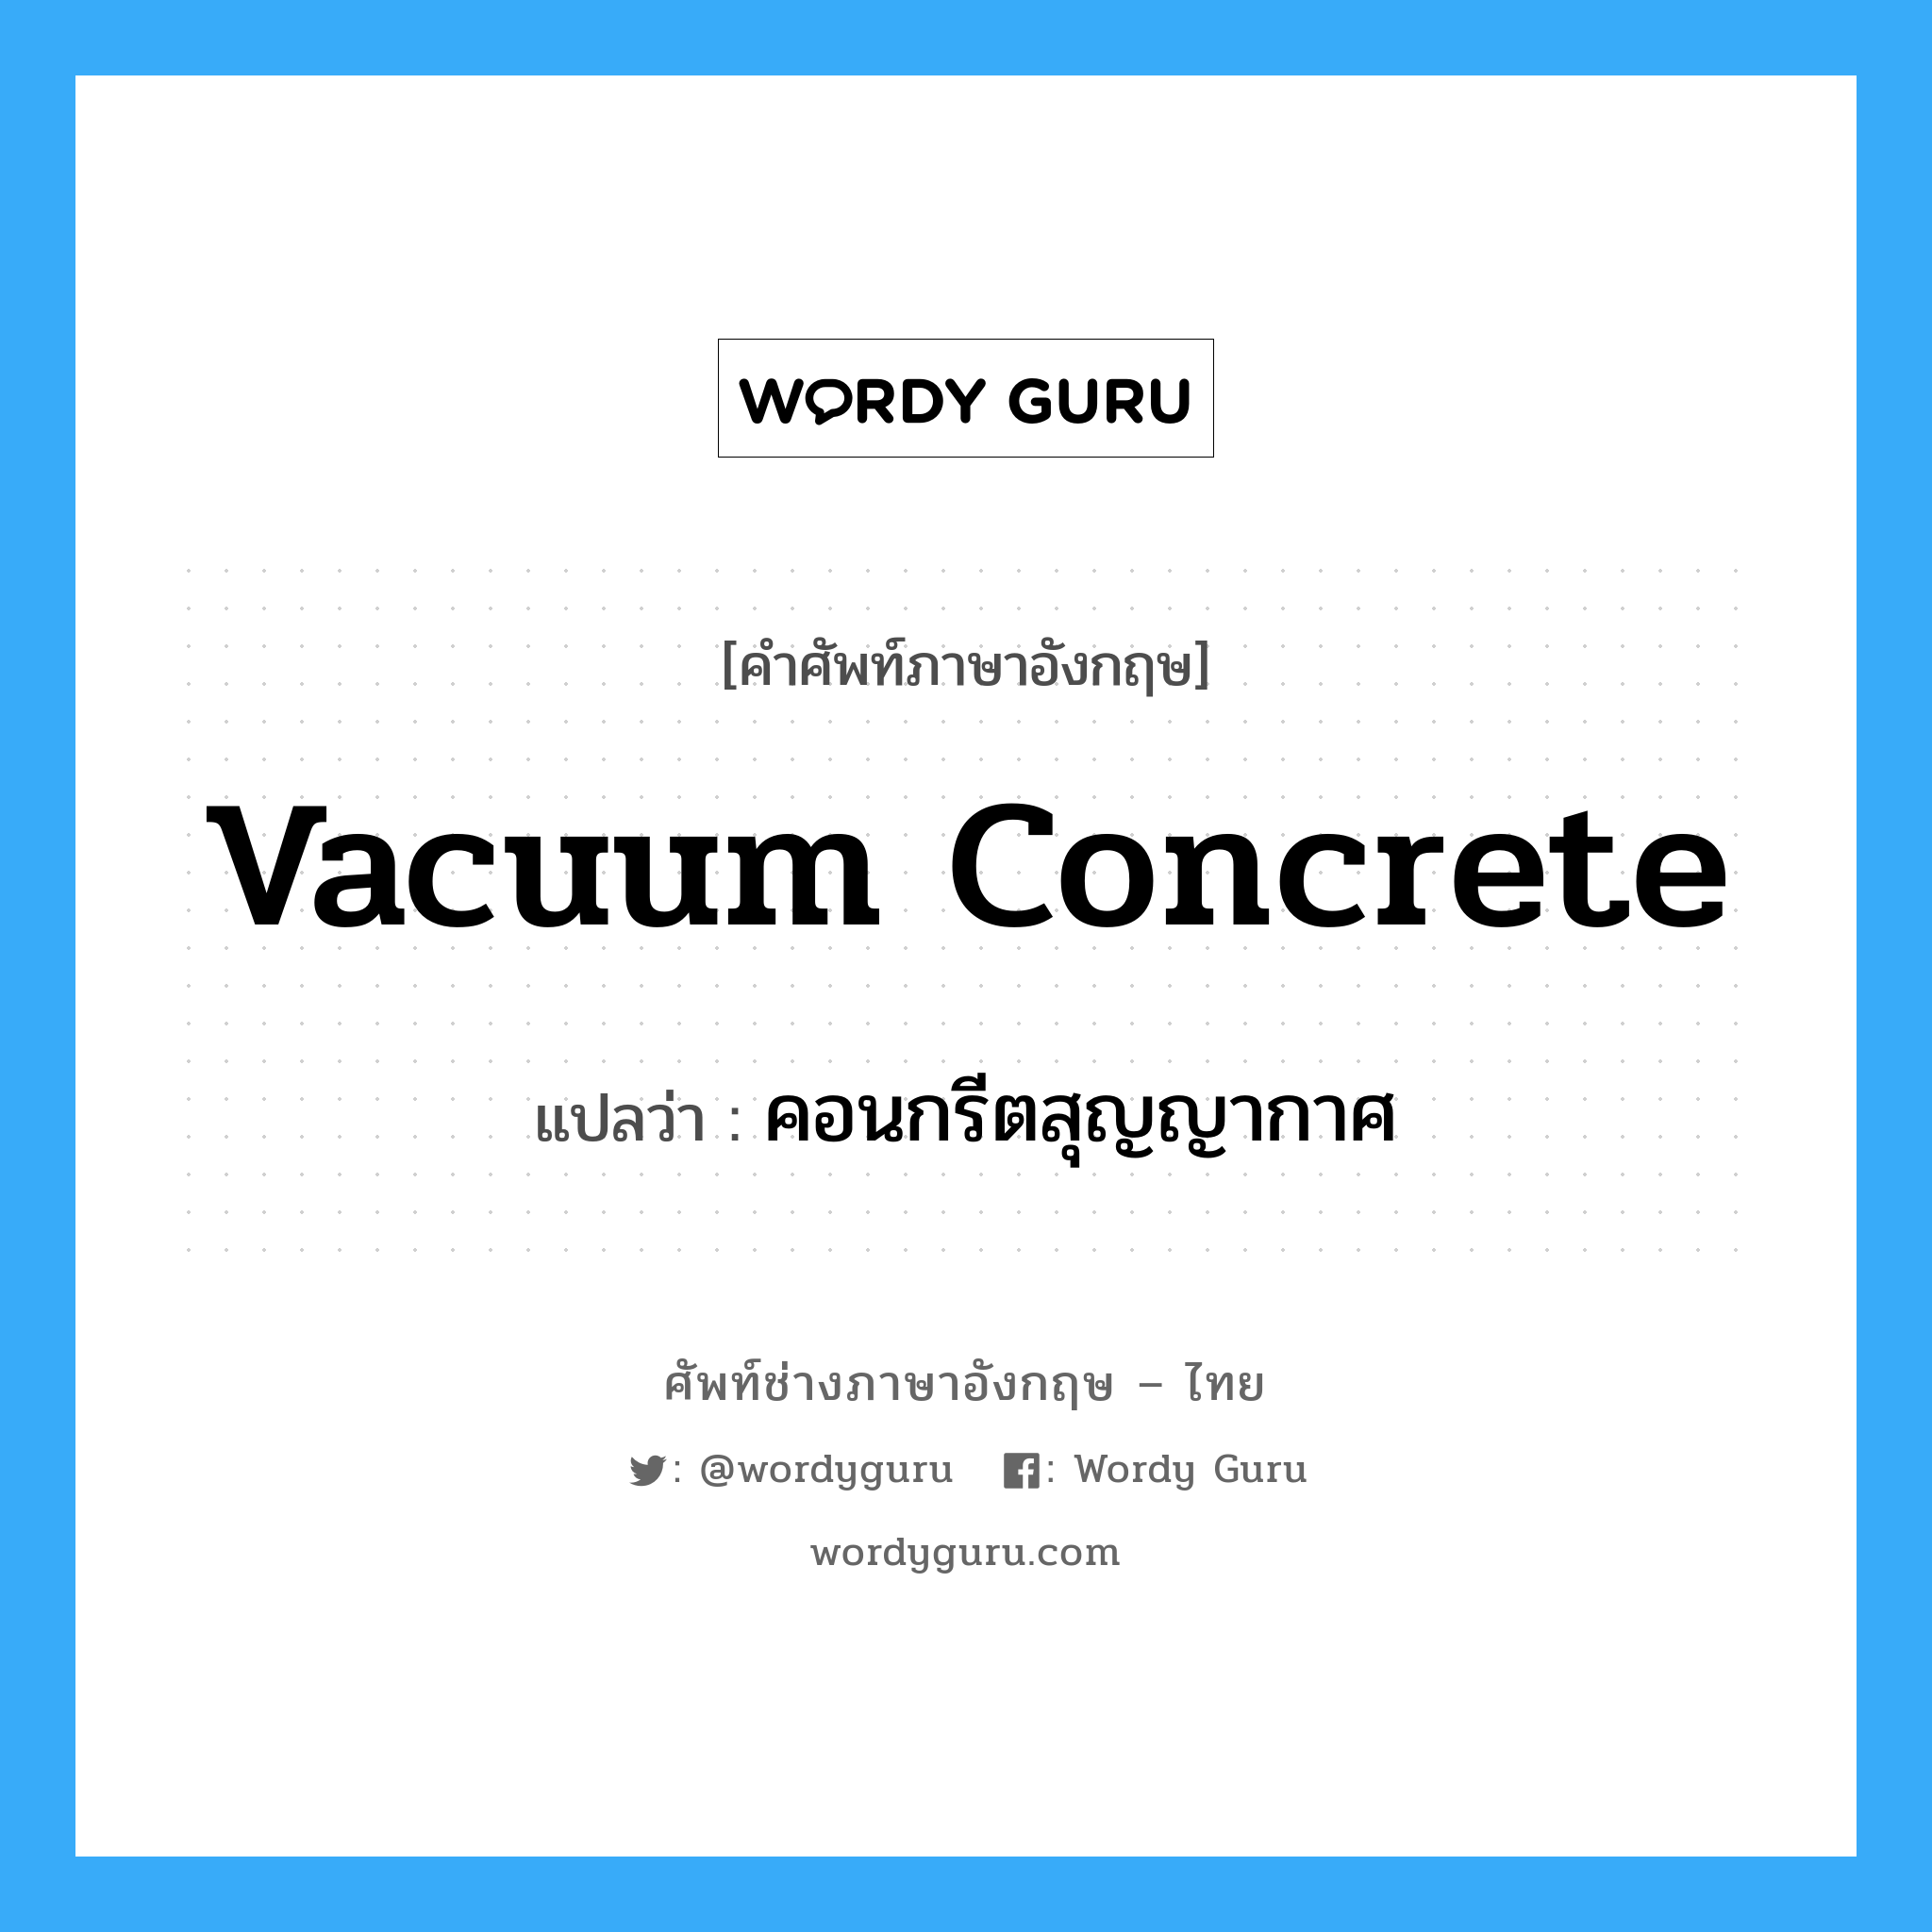 คอนกรีตสุญญากาศ ภาษาอังกฤษ?, คำศัพท์ช่างภาษาอังกฤษ - ไทย คอนกรีตสุญญากาศ คำศัพท์ภาษาอังกฤษ คอนกรีตสุญญากาศ แปลว่า vacuum concrete